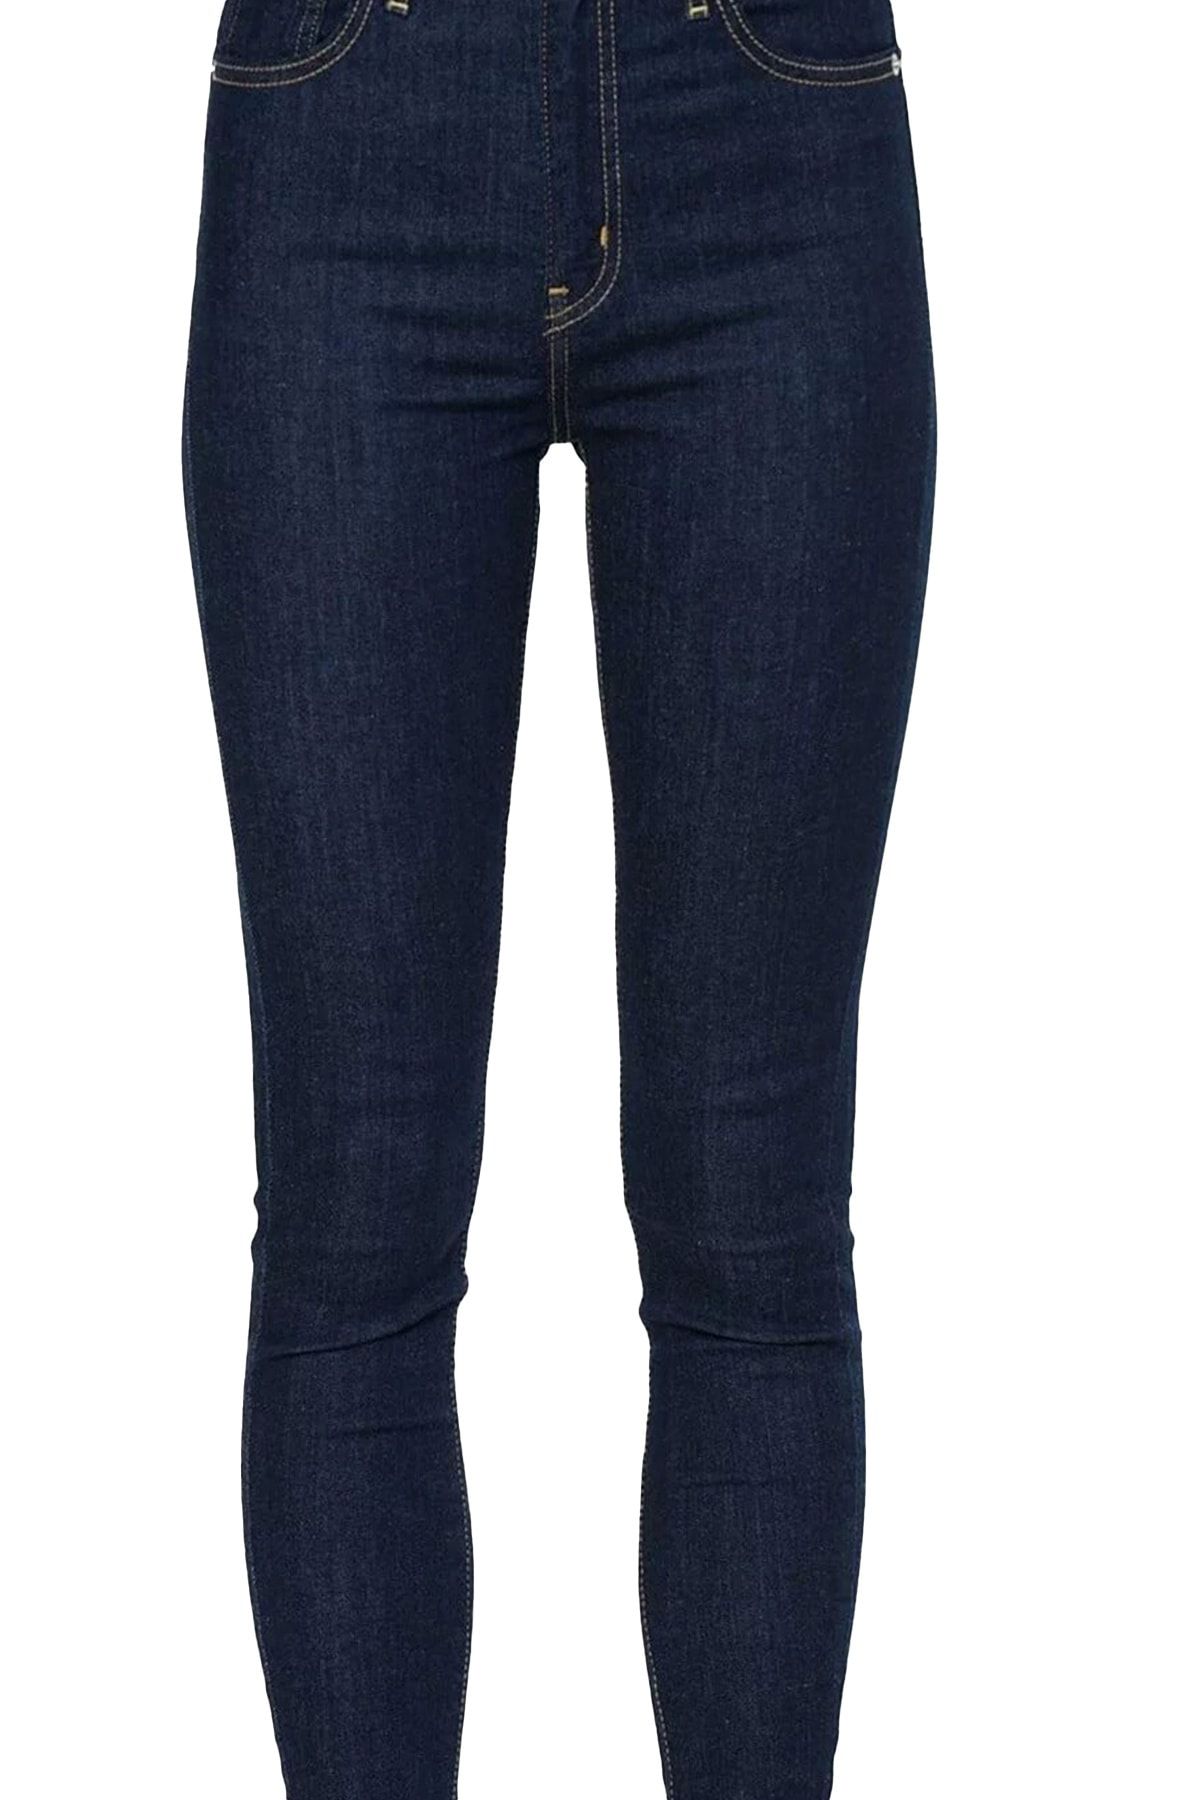 Levi's Mıle Hıgh Super Skınny Upgrade Kadın Kot Pantolon Fiyatı, Yorumları  - TRENDYOL